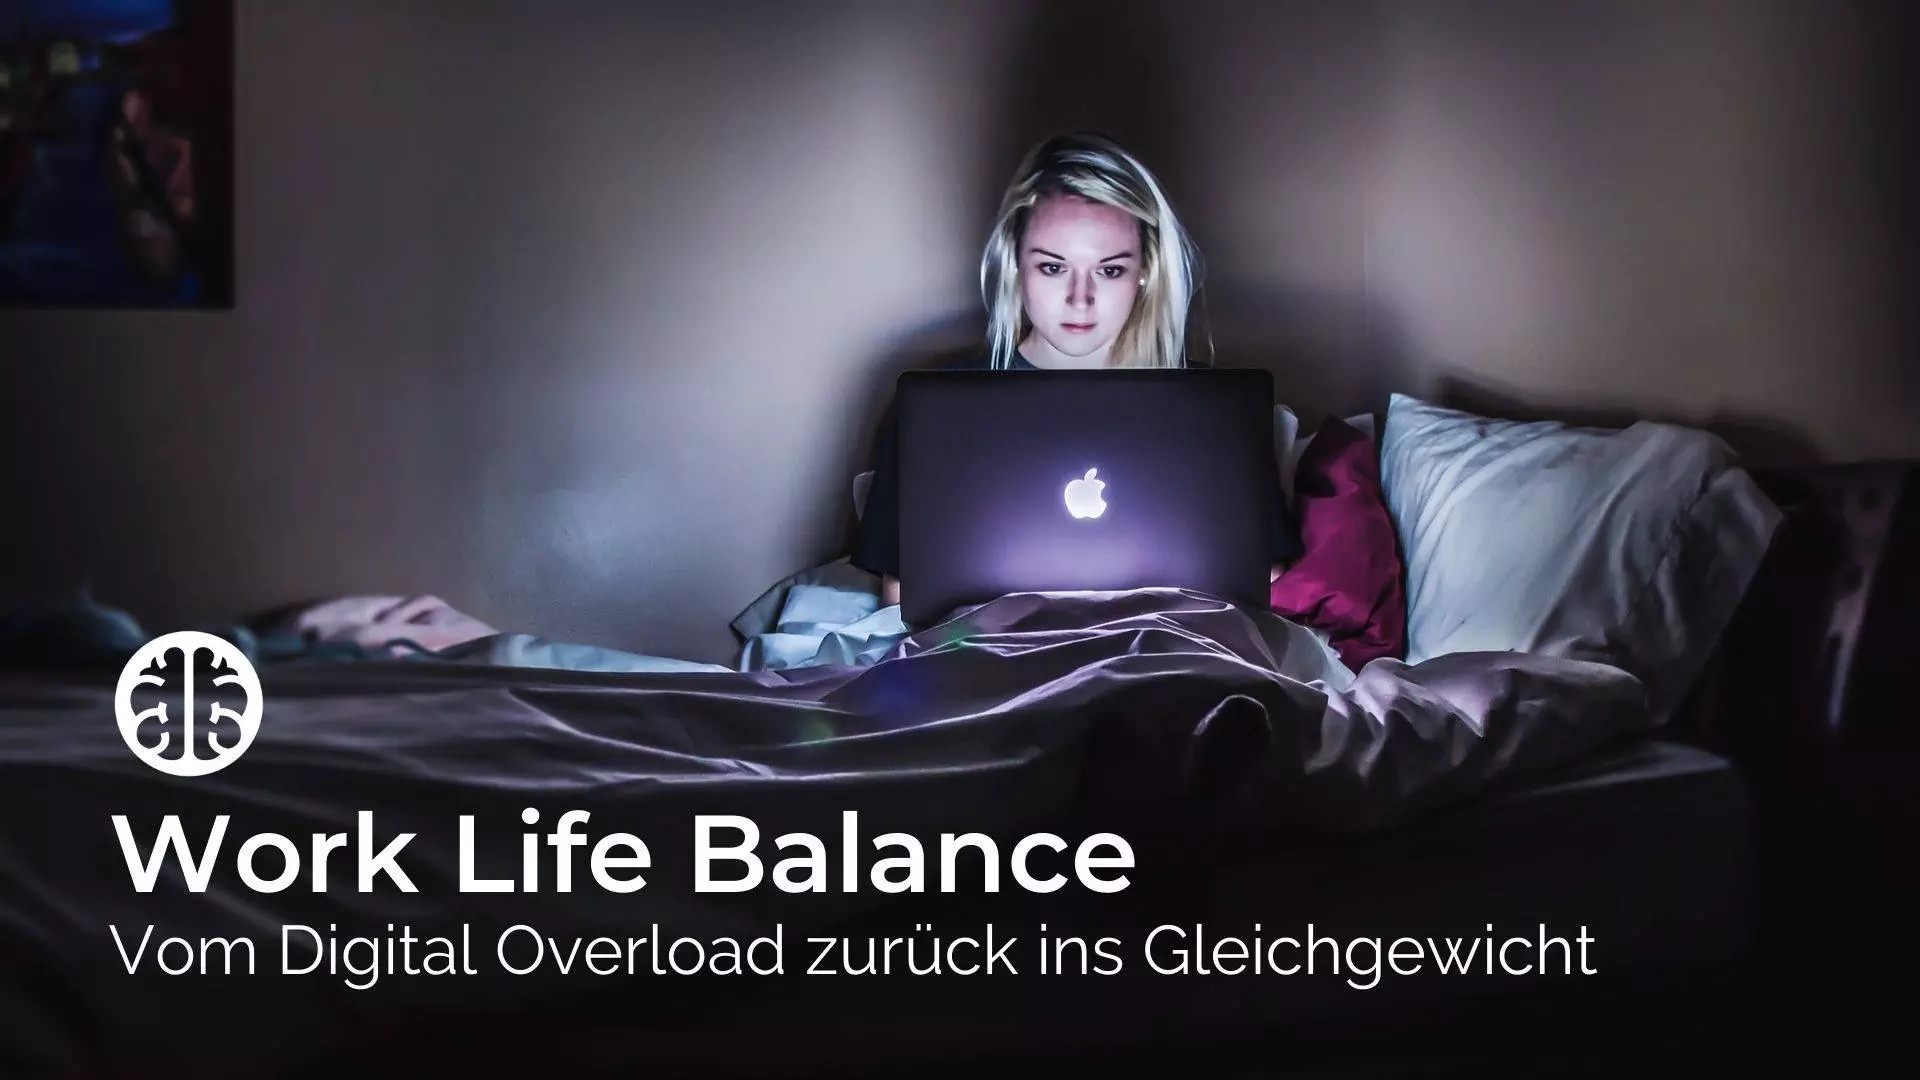 Work Life Balance - 4 Schritte gegen die digitale Überforderung - Frau auf dem Bett sitzend mit MacBook auf dem Schoß